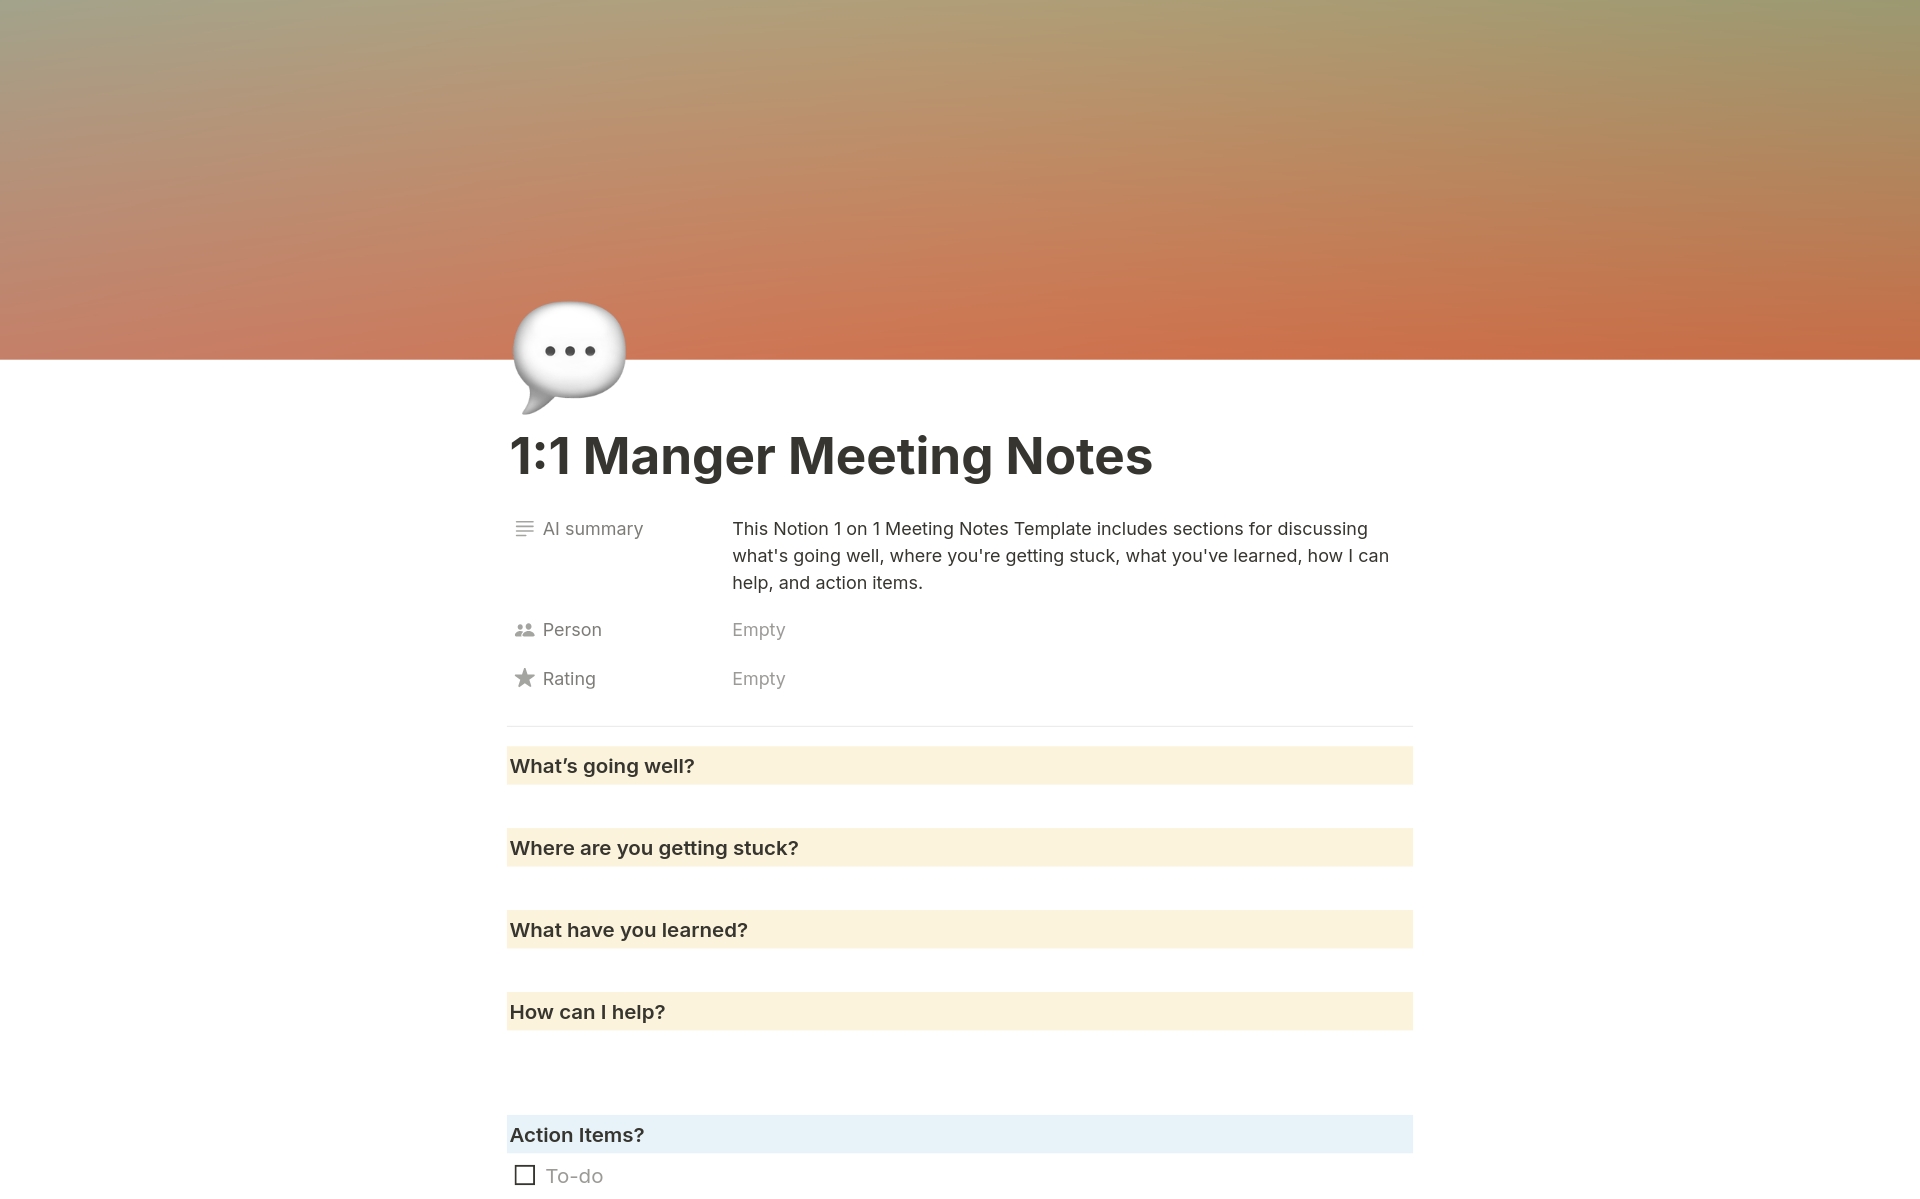 Uma prévia do modelo para 1:1 Manager Meeting Notes 